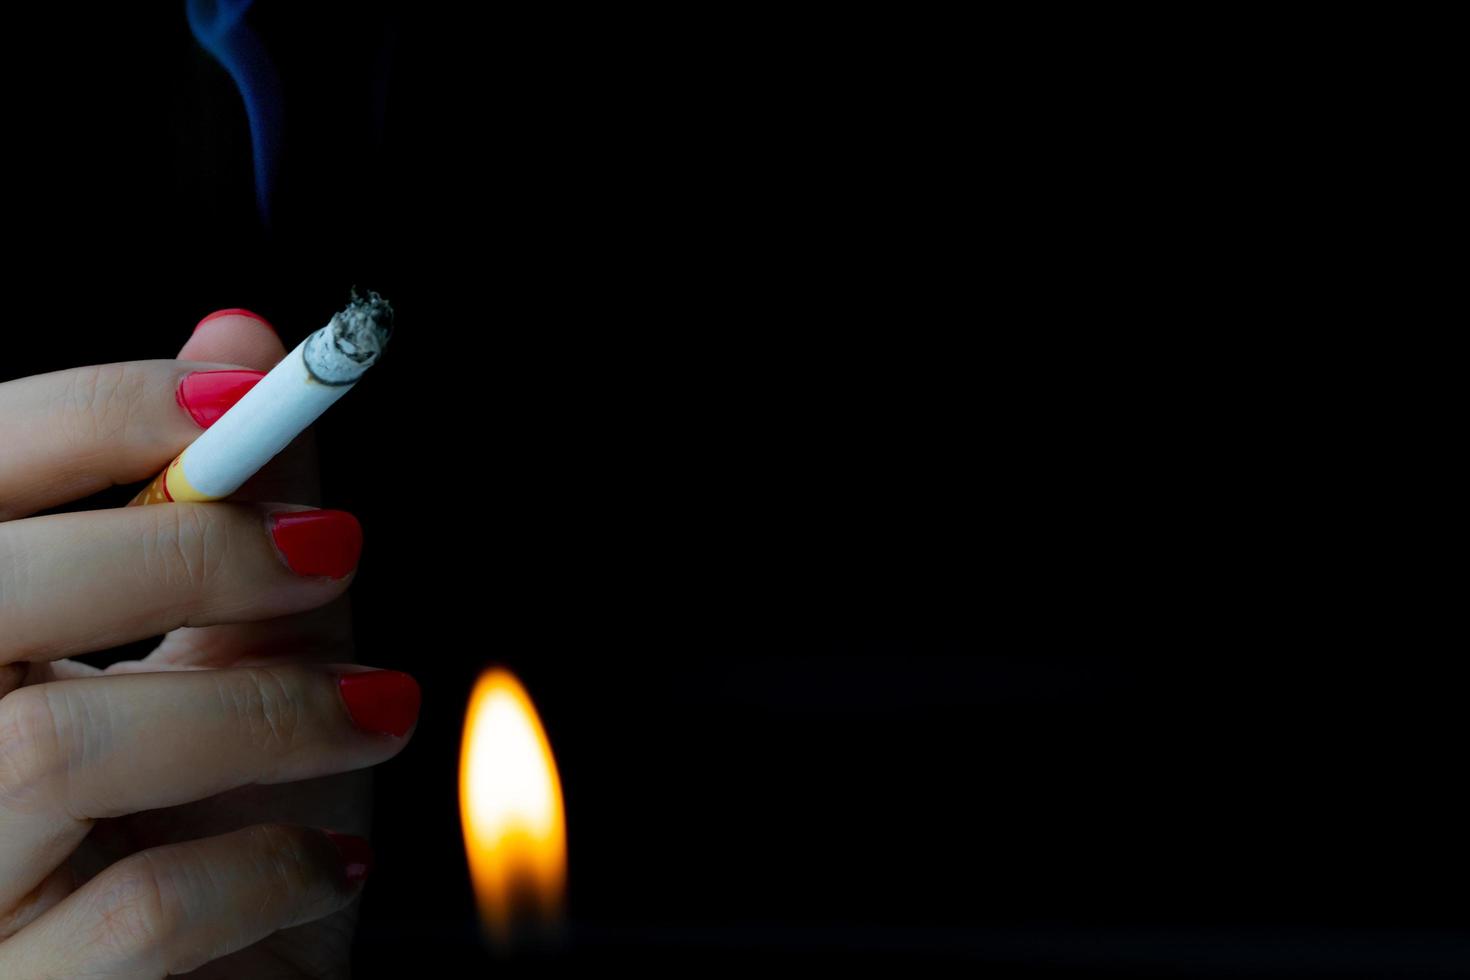 sexig kvinna med röd nagel röker cigarett på mörk bakgrund med kopia utrymme. sluta röka koncept. cigarett som brinner med låga från tändare. nikotinberoende. 31 maj världsdagen för tobaksfri. foto